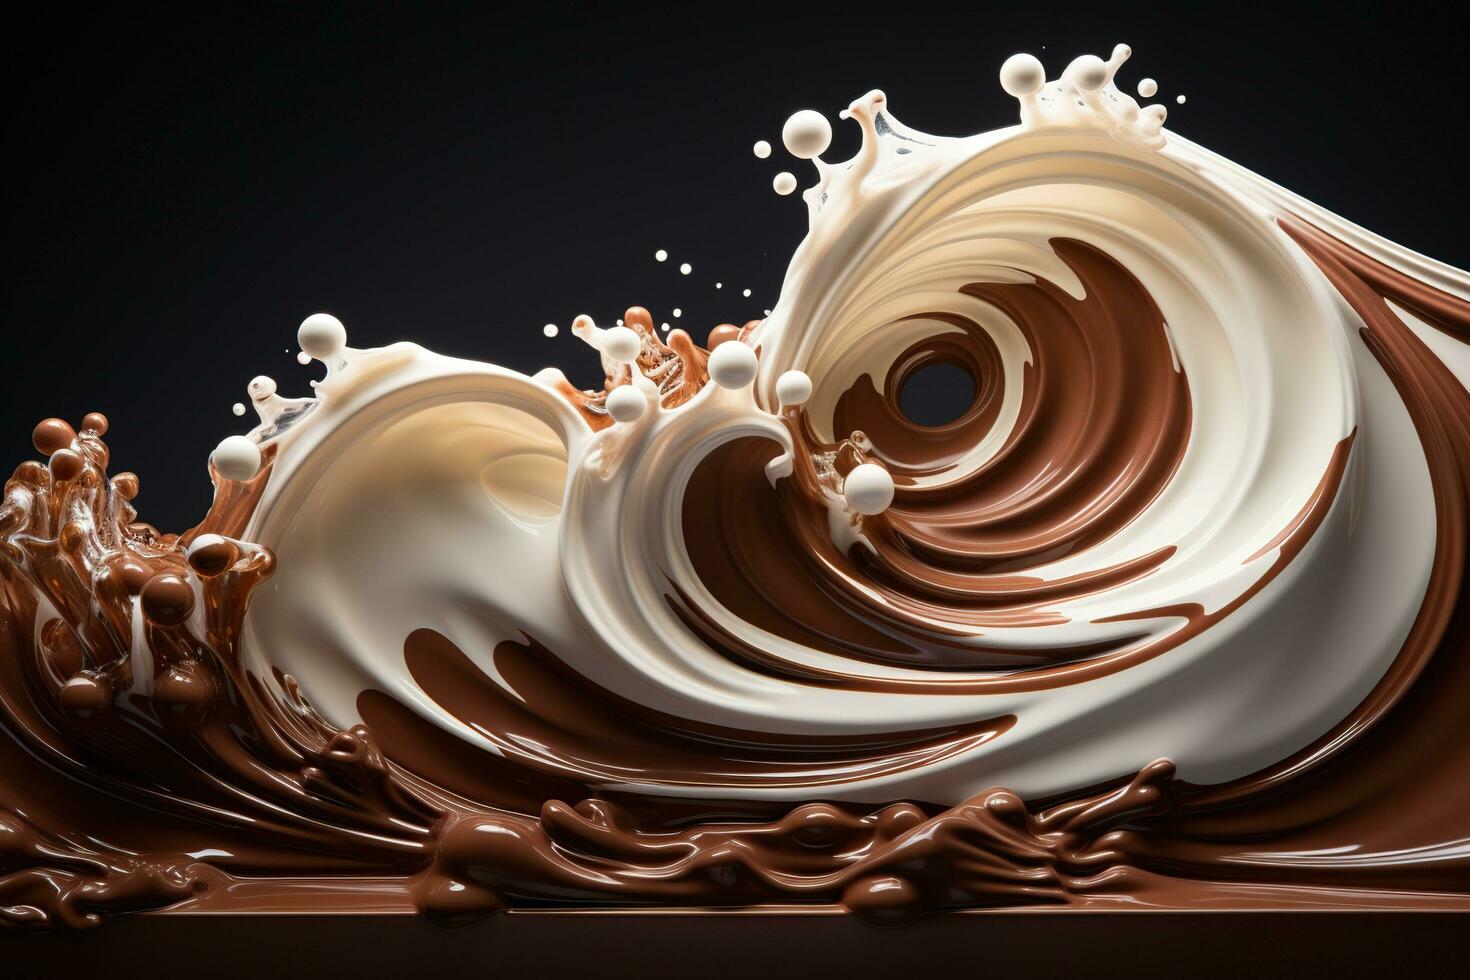 Schokolade und Milch spritzt ziehen um zu jeder andere. schwarz Hintergrund. foto